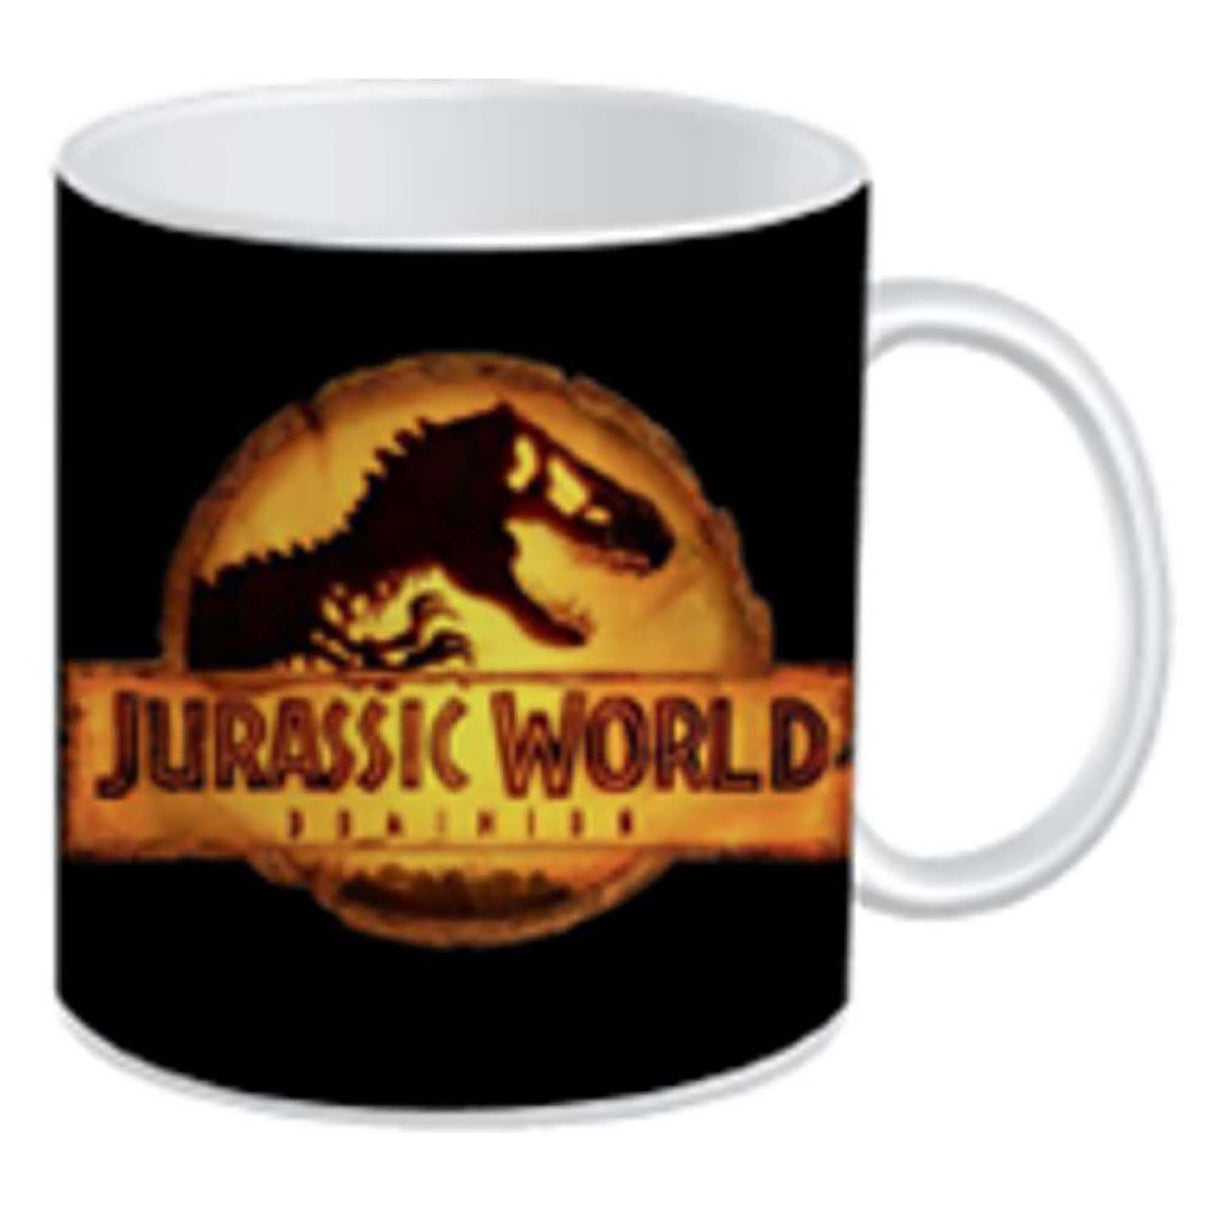 Jurassic World Mug in Gift Box